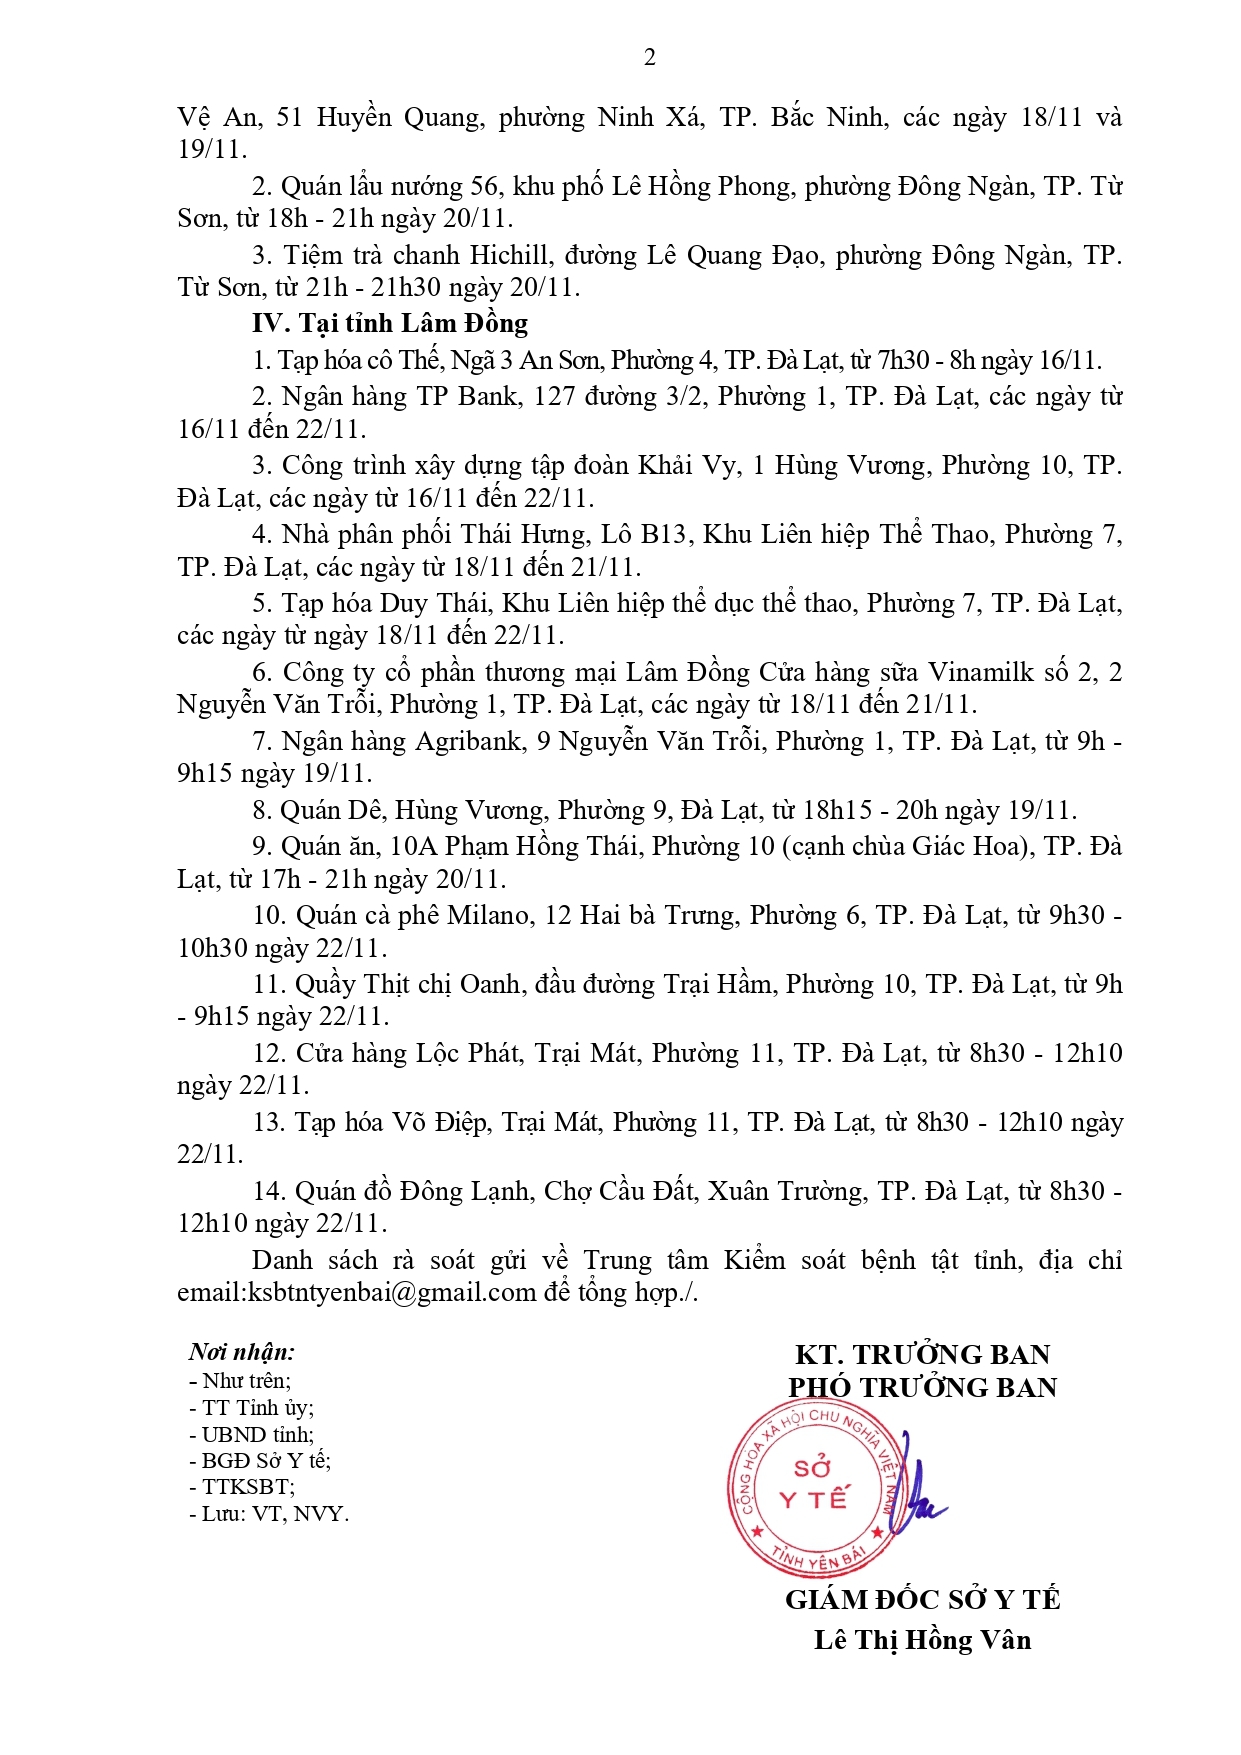 Rà soát các trường hợp có liên quan đến bệnh nhân COVID-19 theo thông báo khẩn của các tỉnh Sơn La, Hà Nội, Bắc Ninh, Lâm Đồng